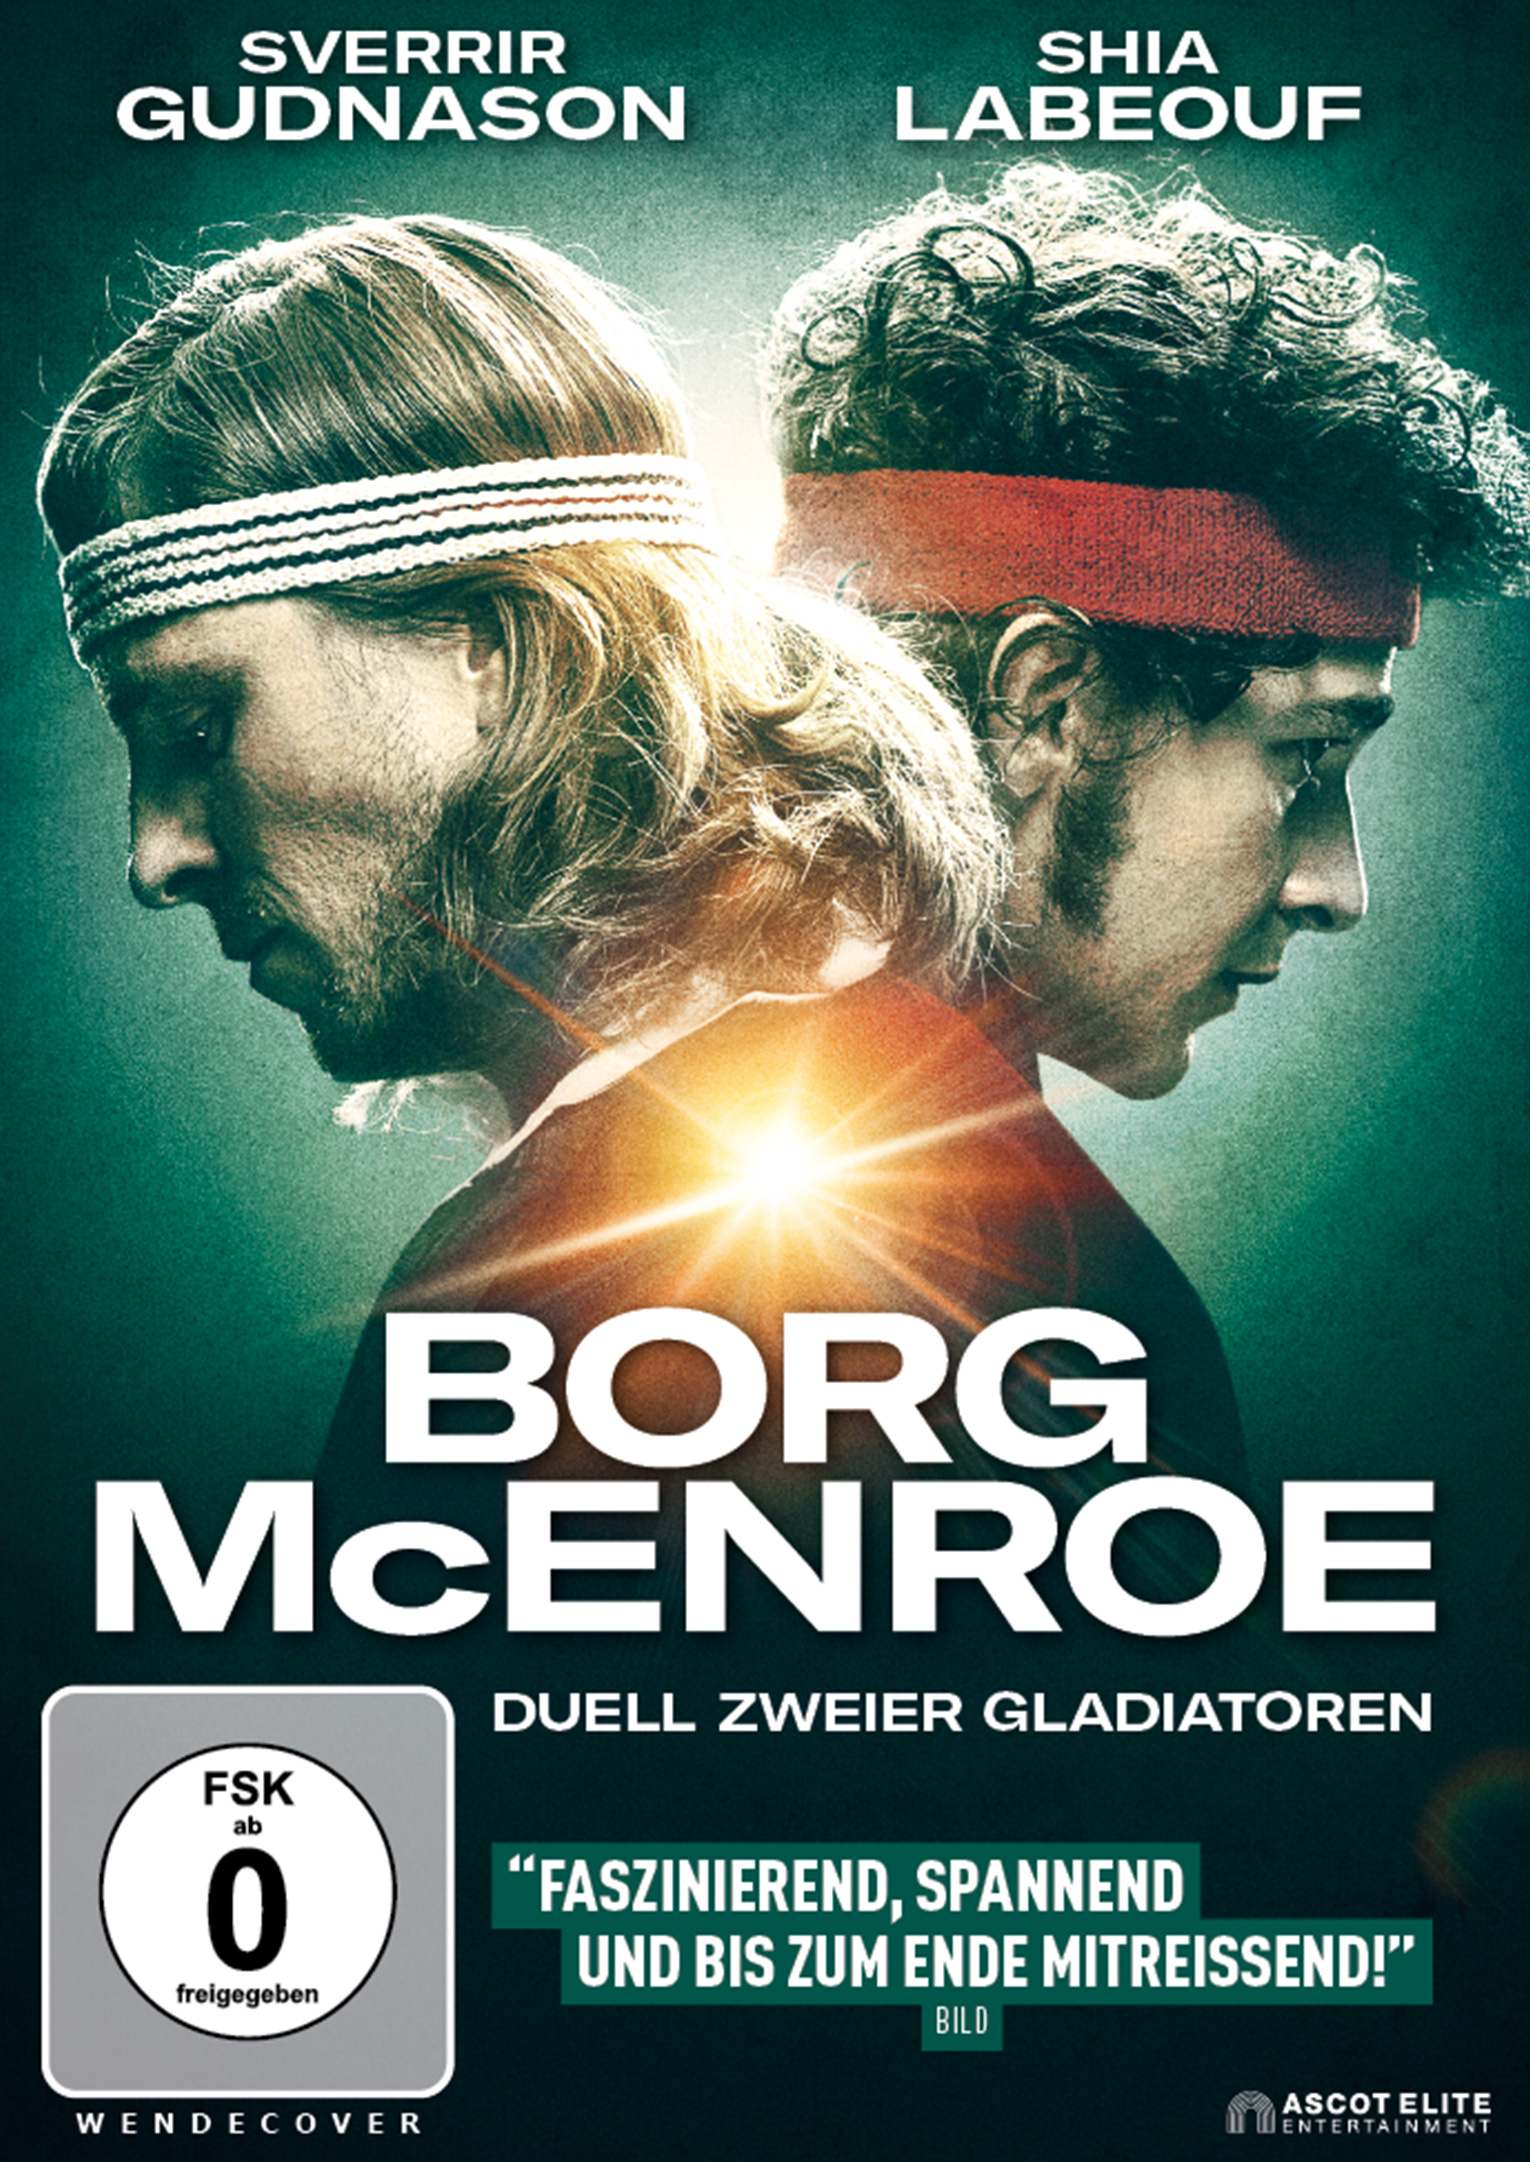 Duell Borg - DVD Gladiatoren McEnroe vs. zweier